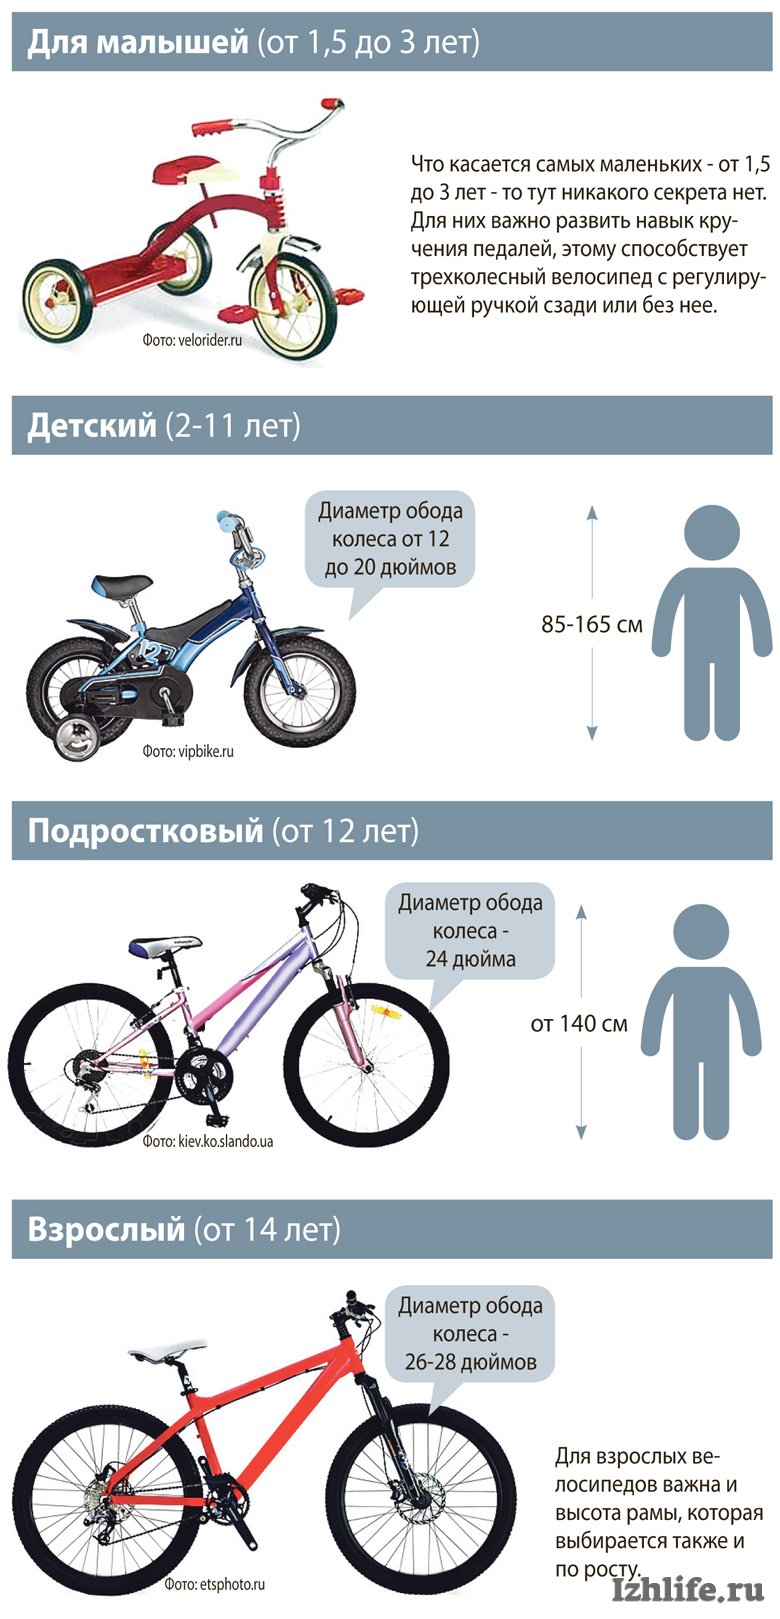 Как определить размер колеса велосипеда. Размер колес детского велосипеда по росту. Как выбрать велосипед для ребенка 4 года по росту и весу таблица. Таблица подбора велосипеда по росту ребенка рамы. Как выбрать раму для велосипеда по росту таблица.